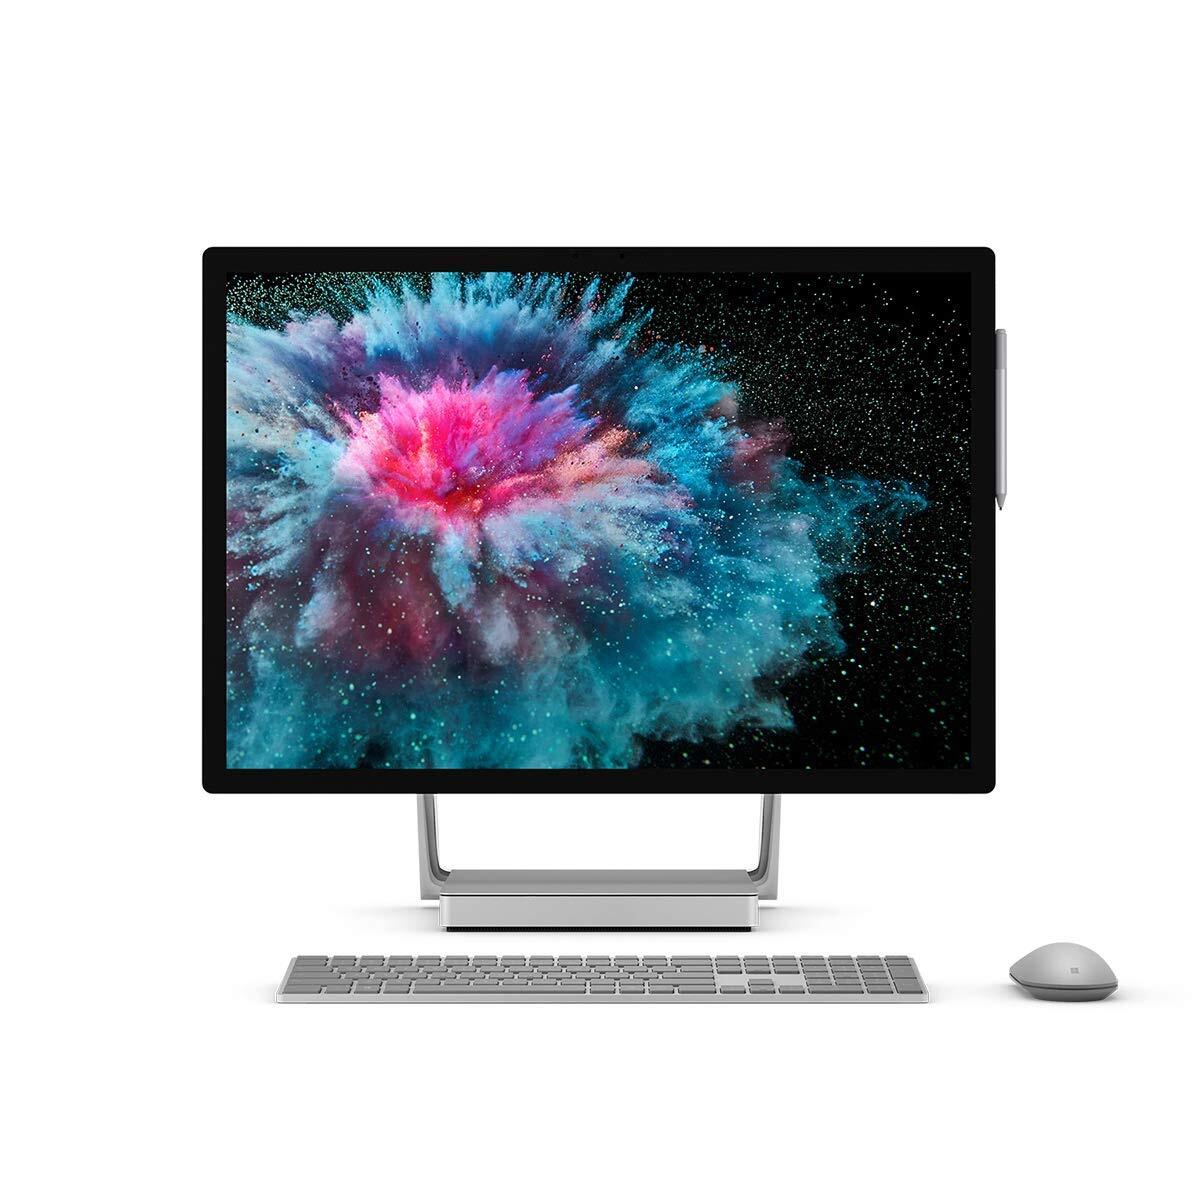 Máy tính để bàn Microsoft Surface Studio 2 - Intel Core i7-7820HQ, 32GB RAM, HDD 2TB, Nvidia GeForce GTX 1070 8GB GDDR5, 28 inch